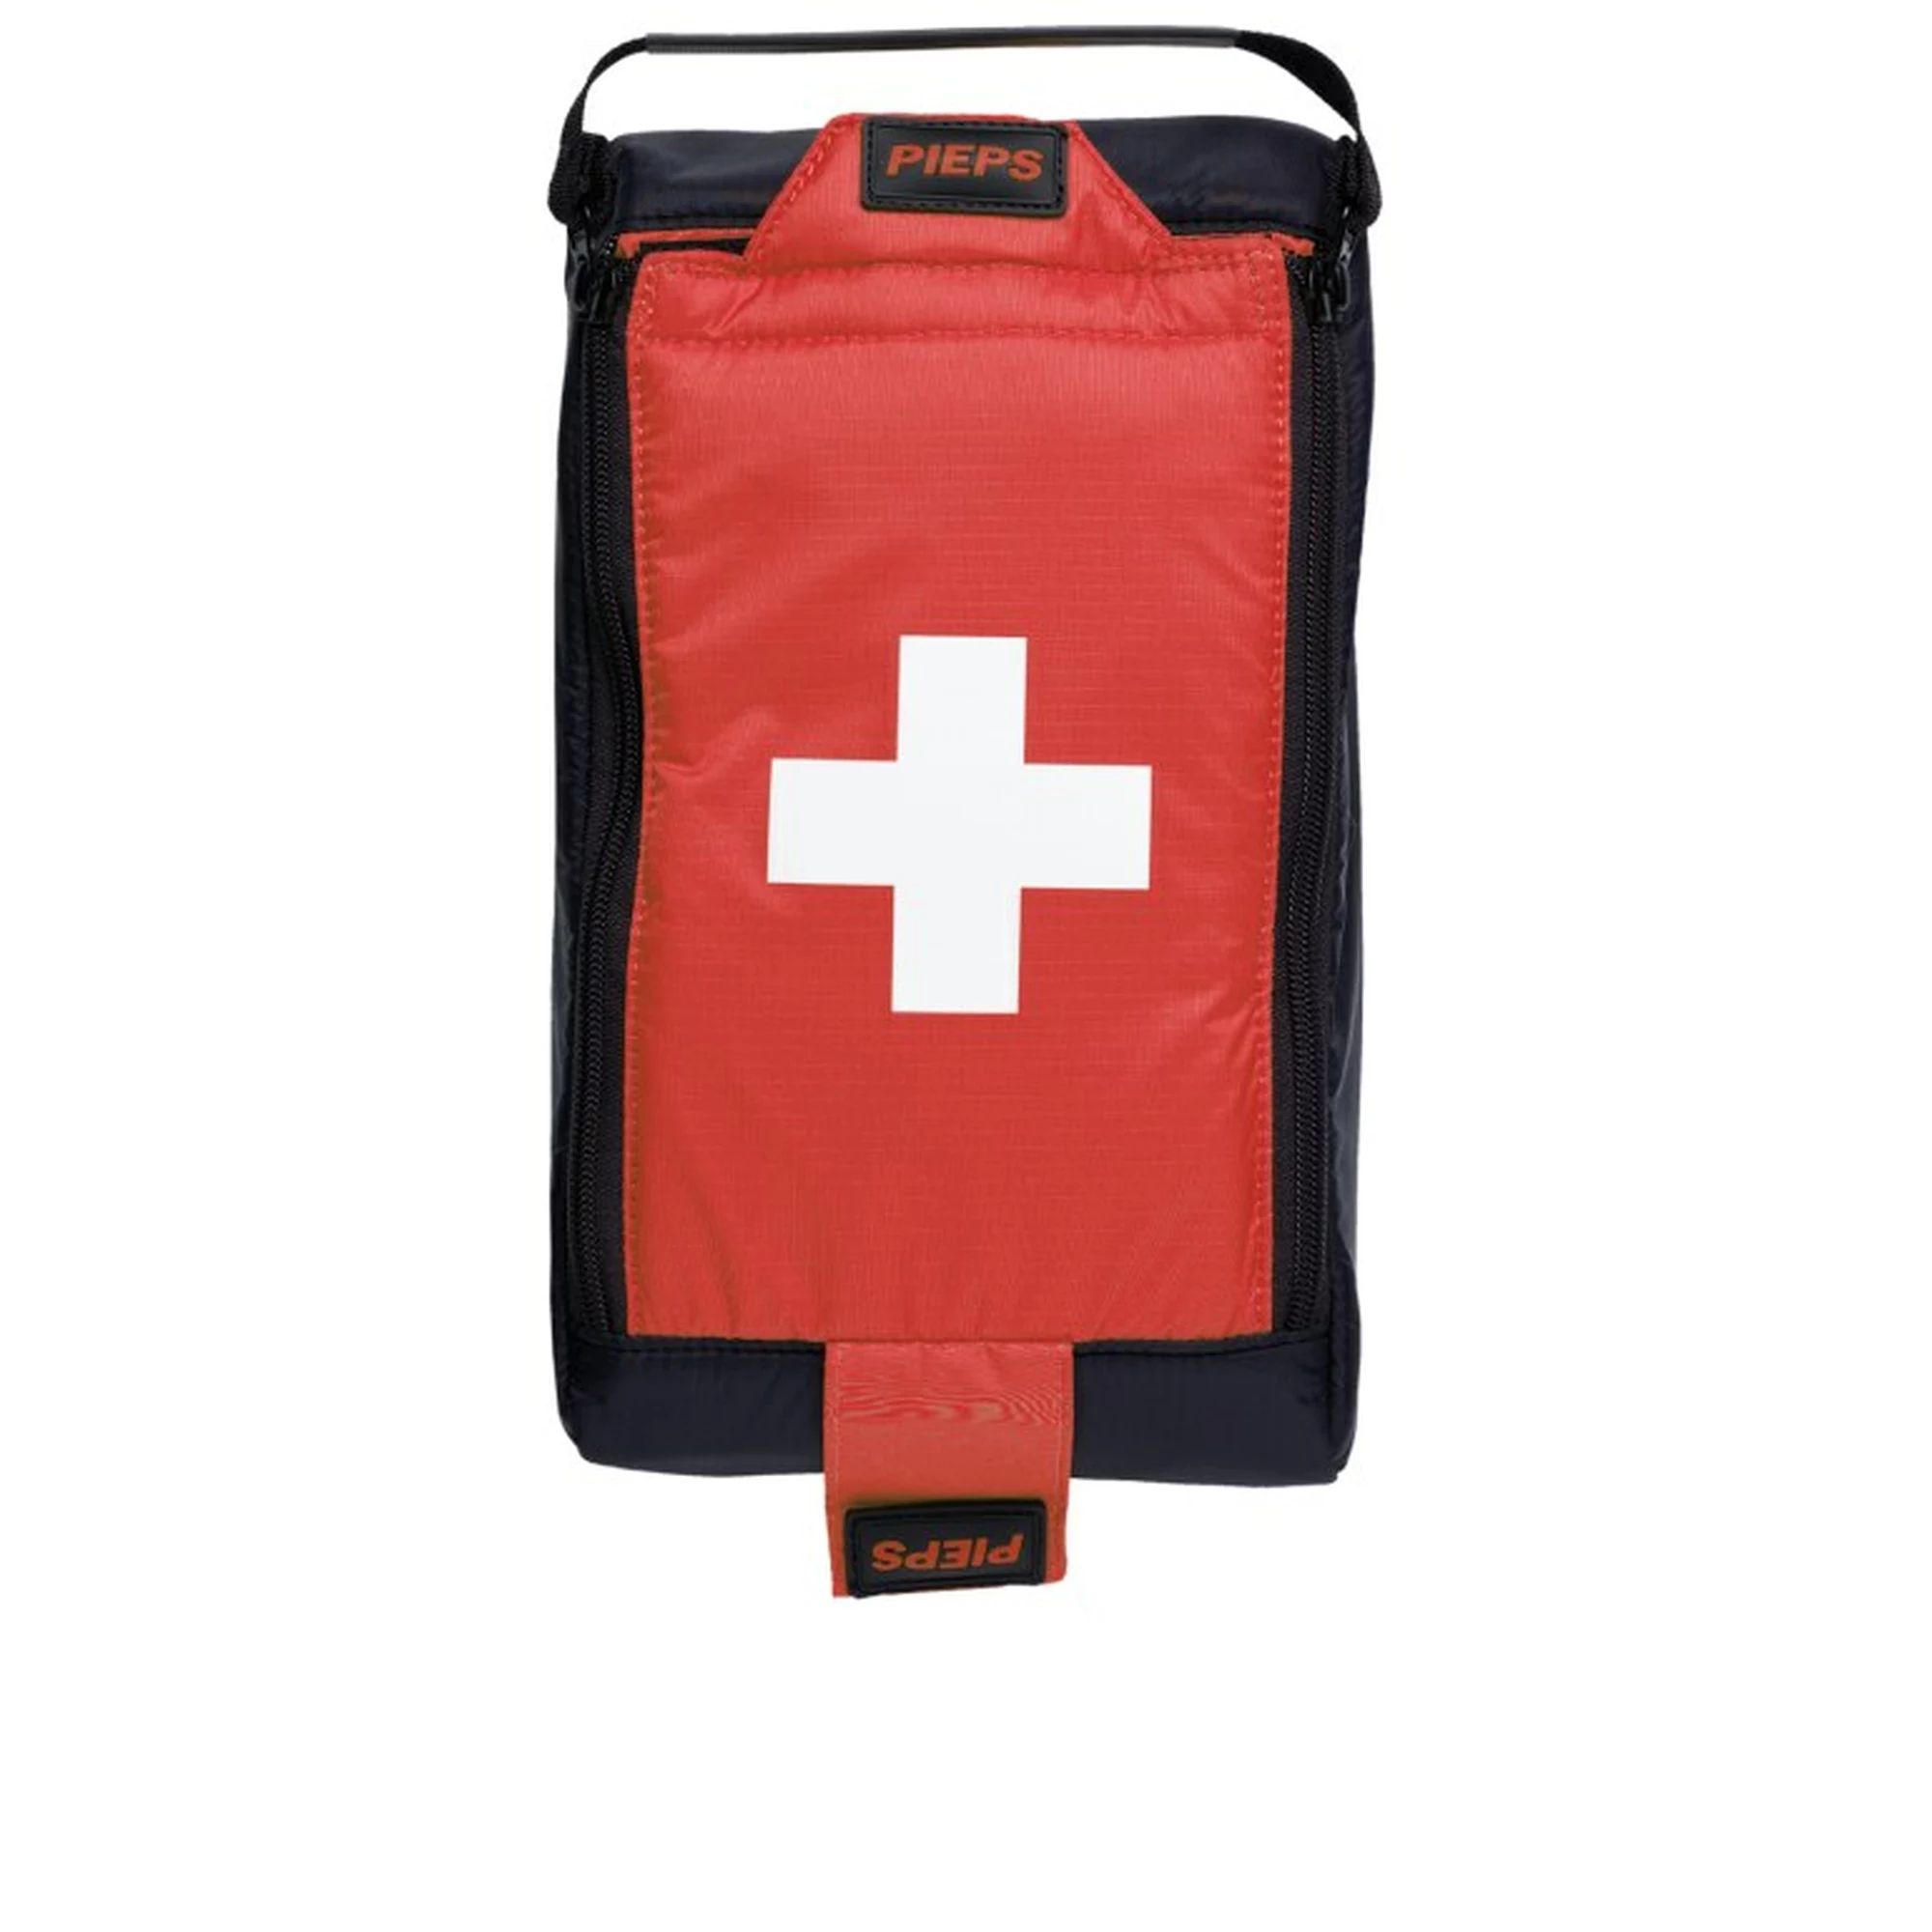 First Aid Kits – Das muss dabei sein